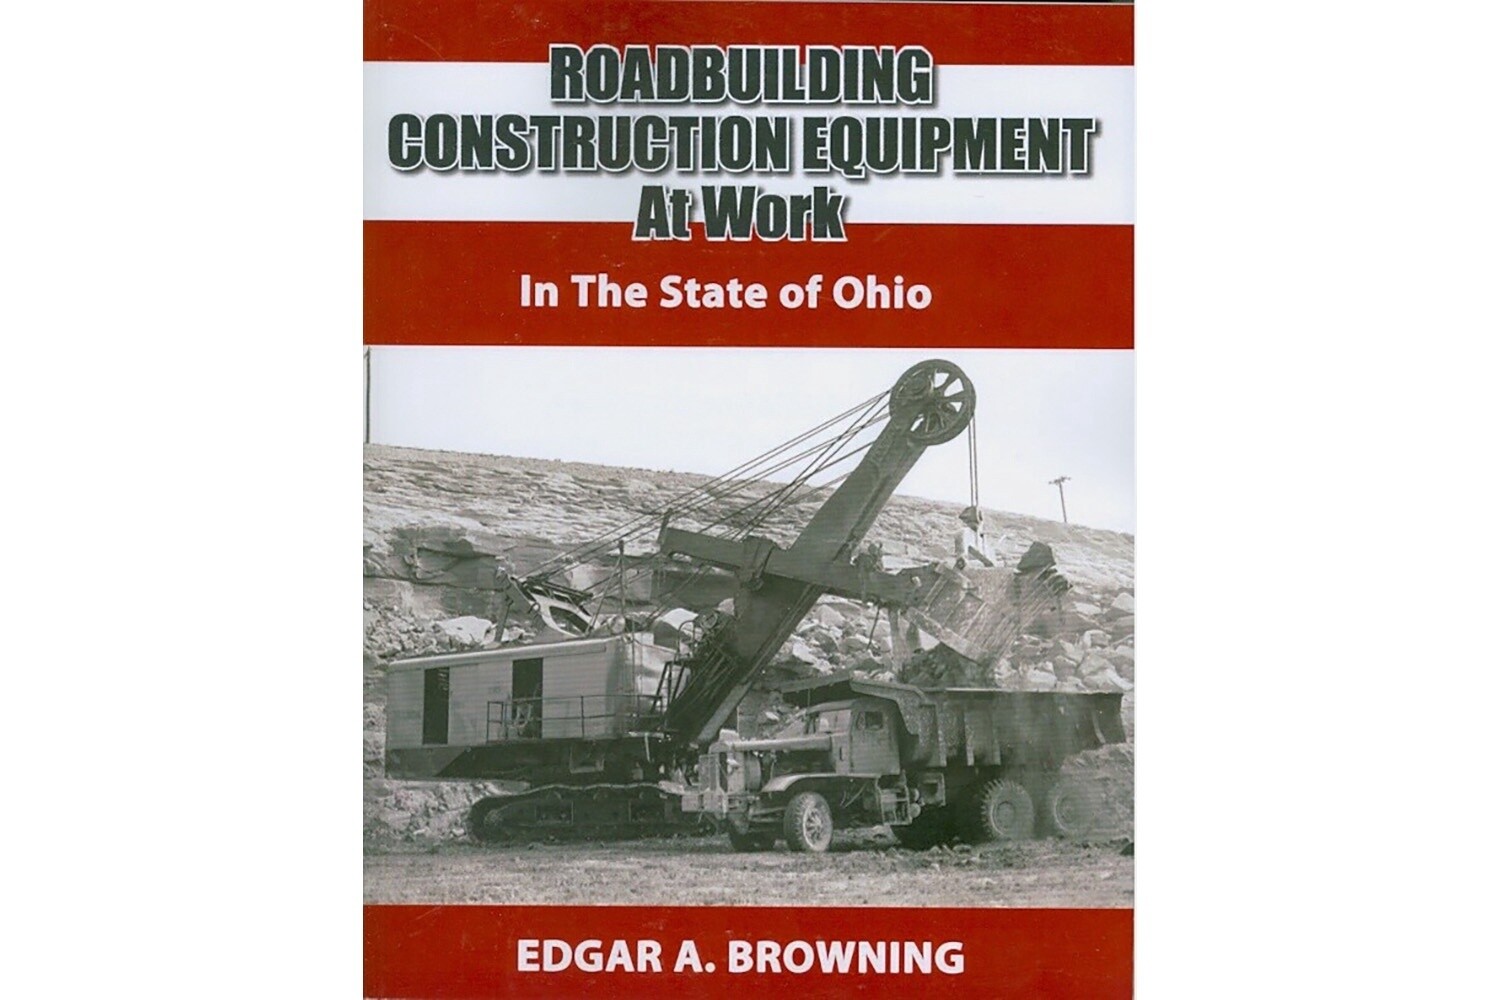 Roadbuilding Construction Equip at Work - Ohio